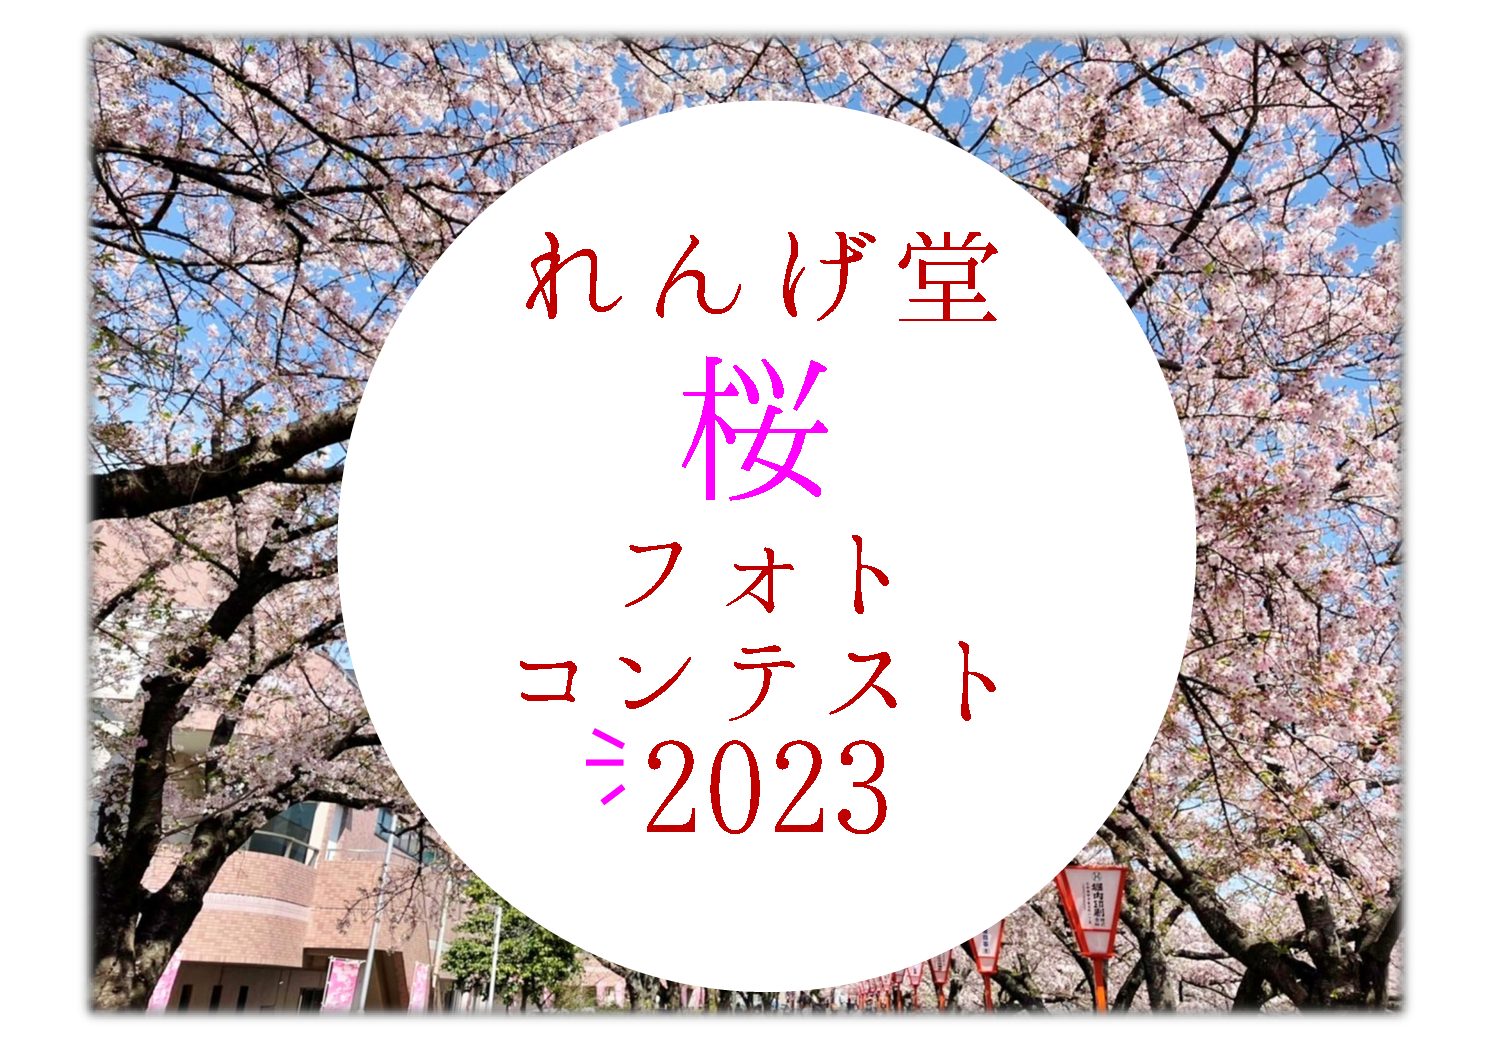 ☆桜フォトコンテスト2023☆入賞作品発表